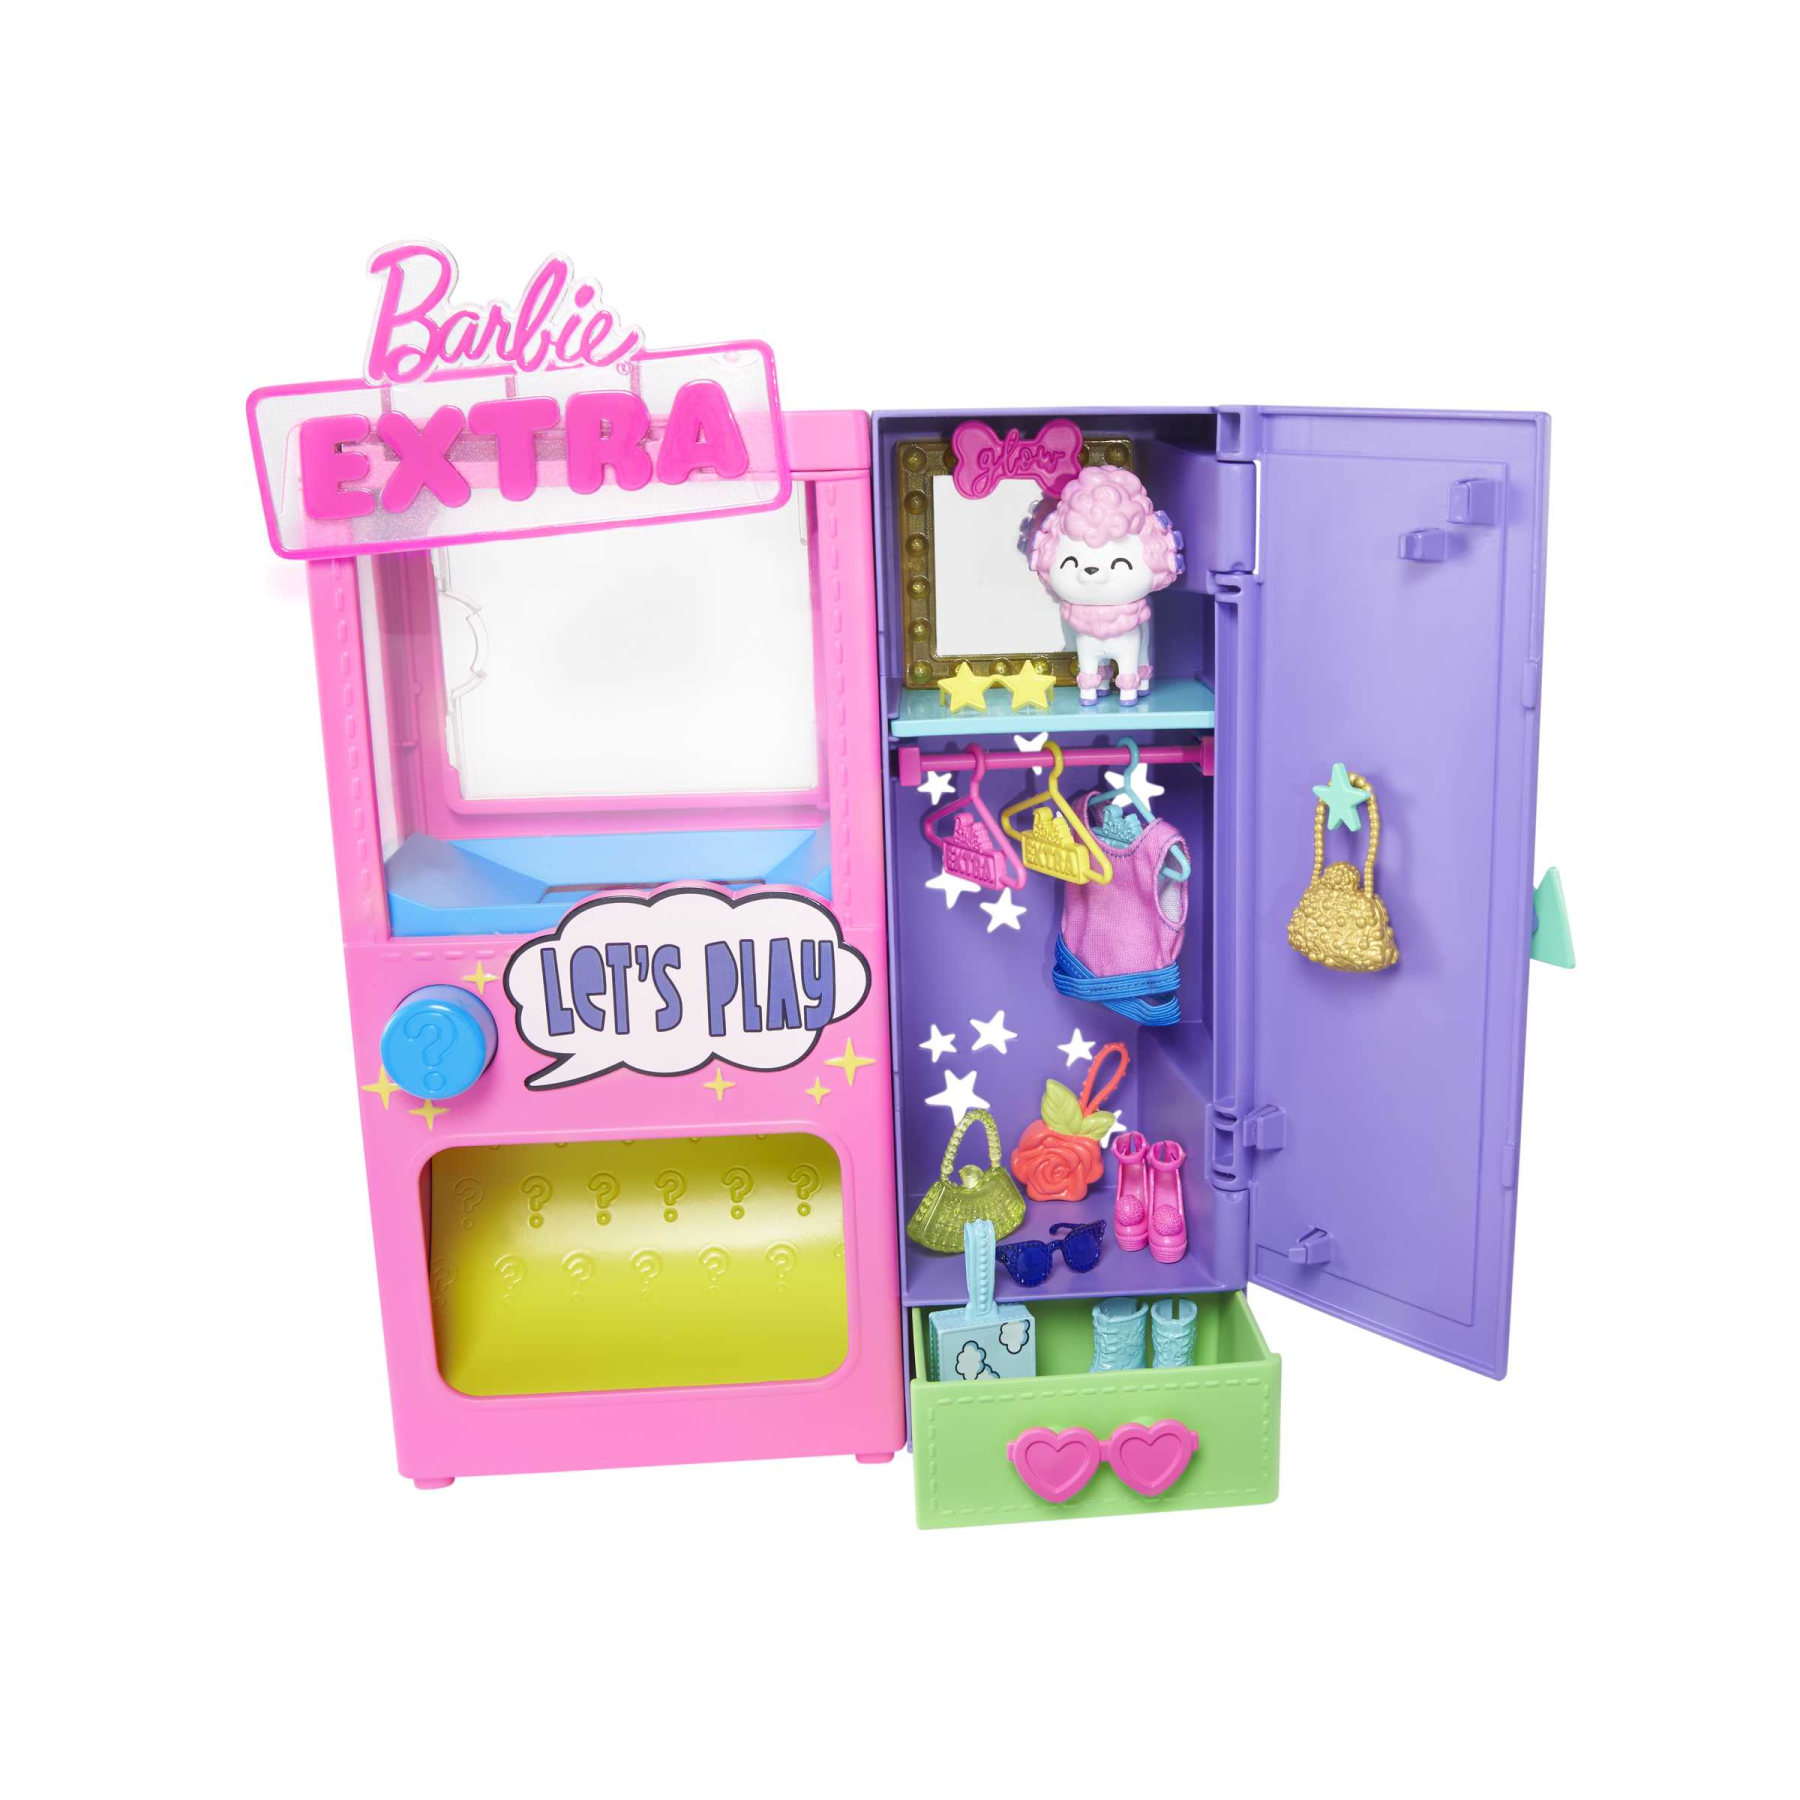 Barbie extra moda a sorpresa playset con 20 accessori, tra cui un barboncino, un guardaroba e pulsante per prendere gli accessori, regalo per i bambini dai 3 anni in su - Barbie